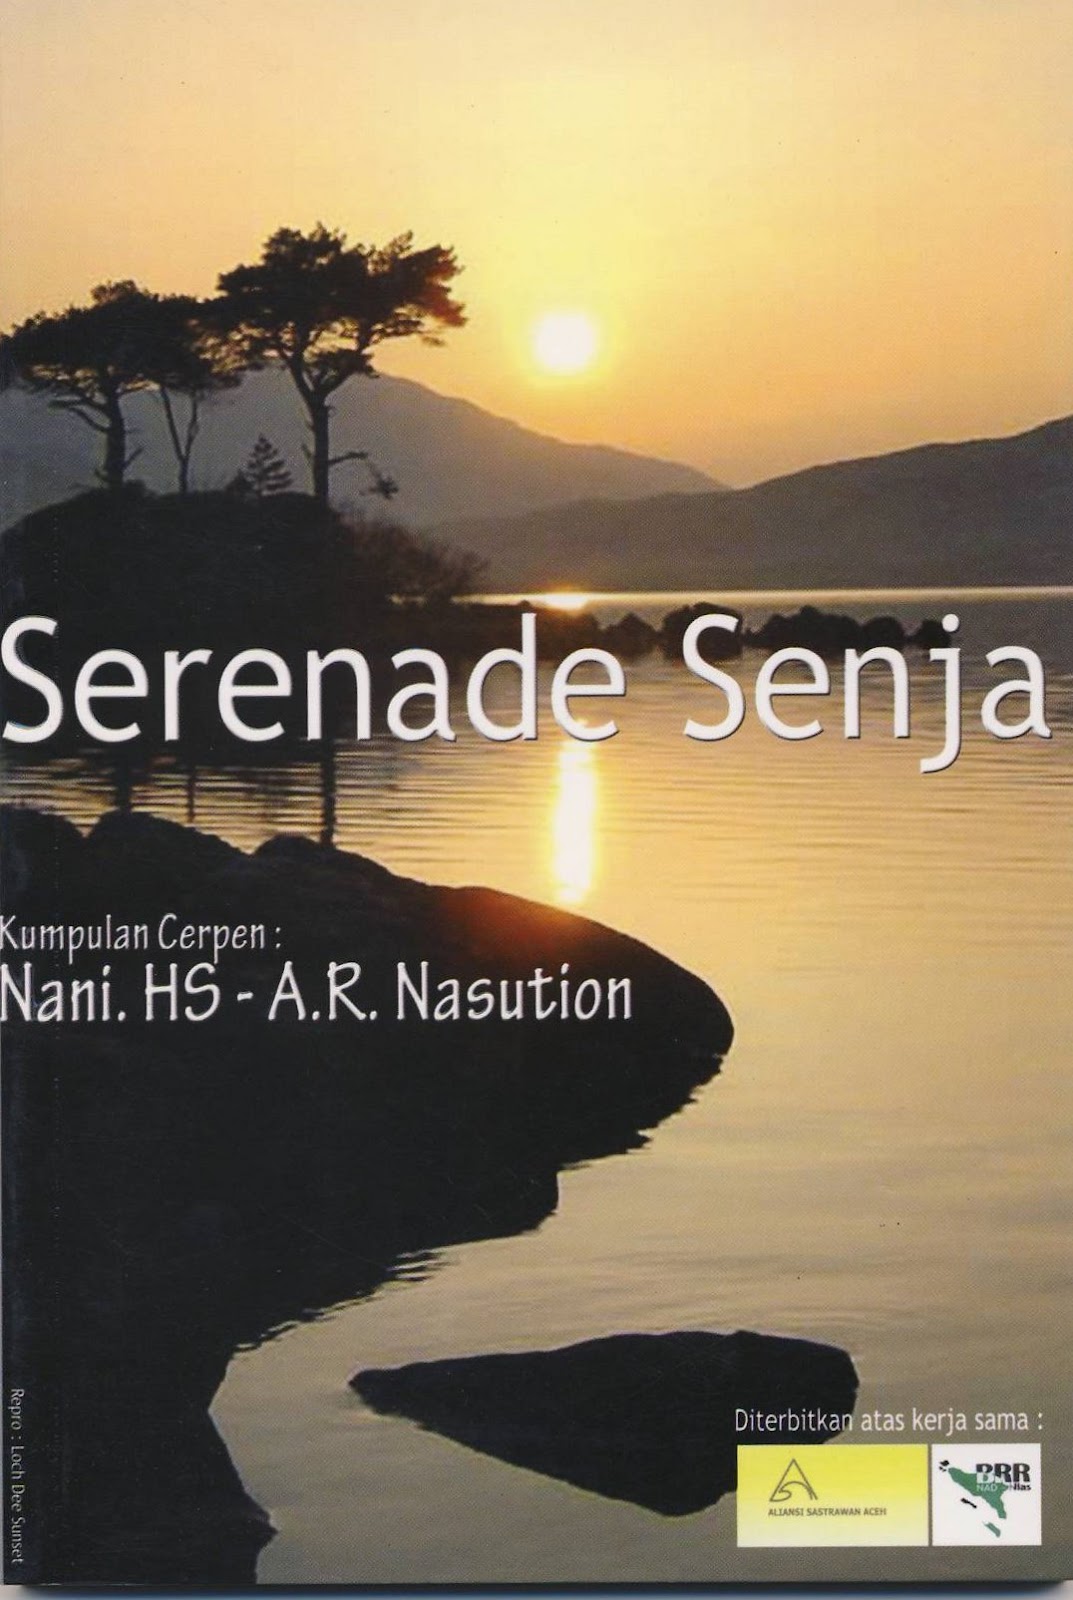 Review Buku Serenade Senja Fardelyn Hacky